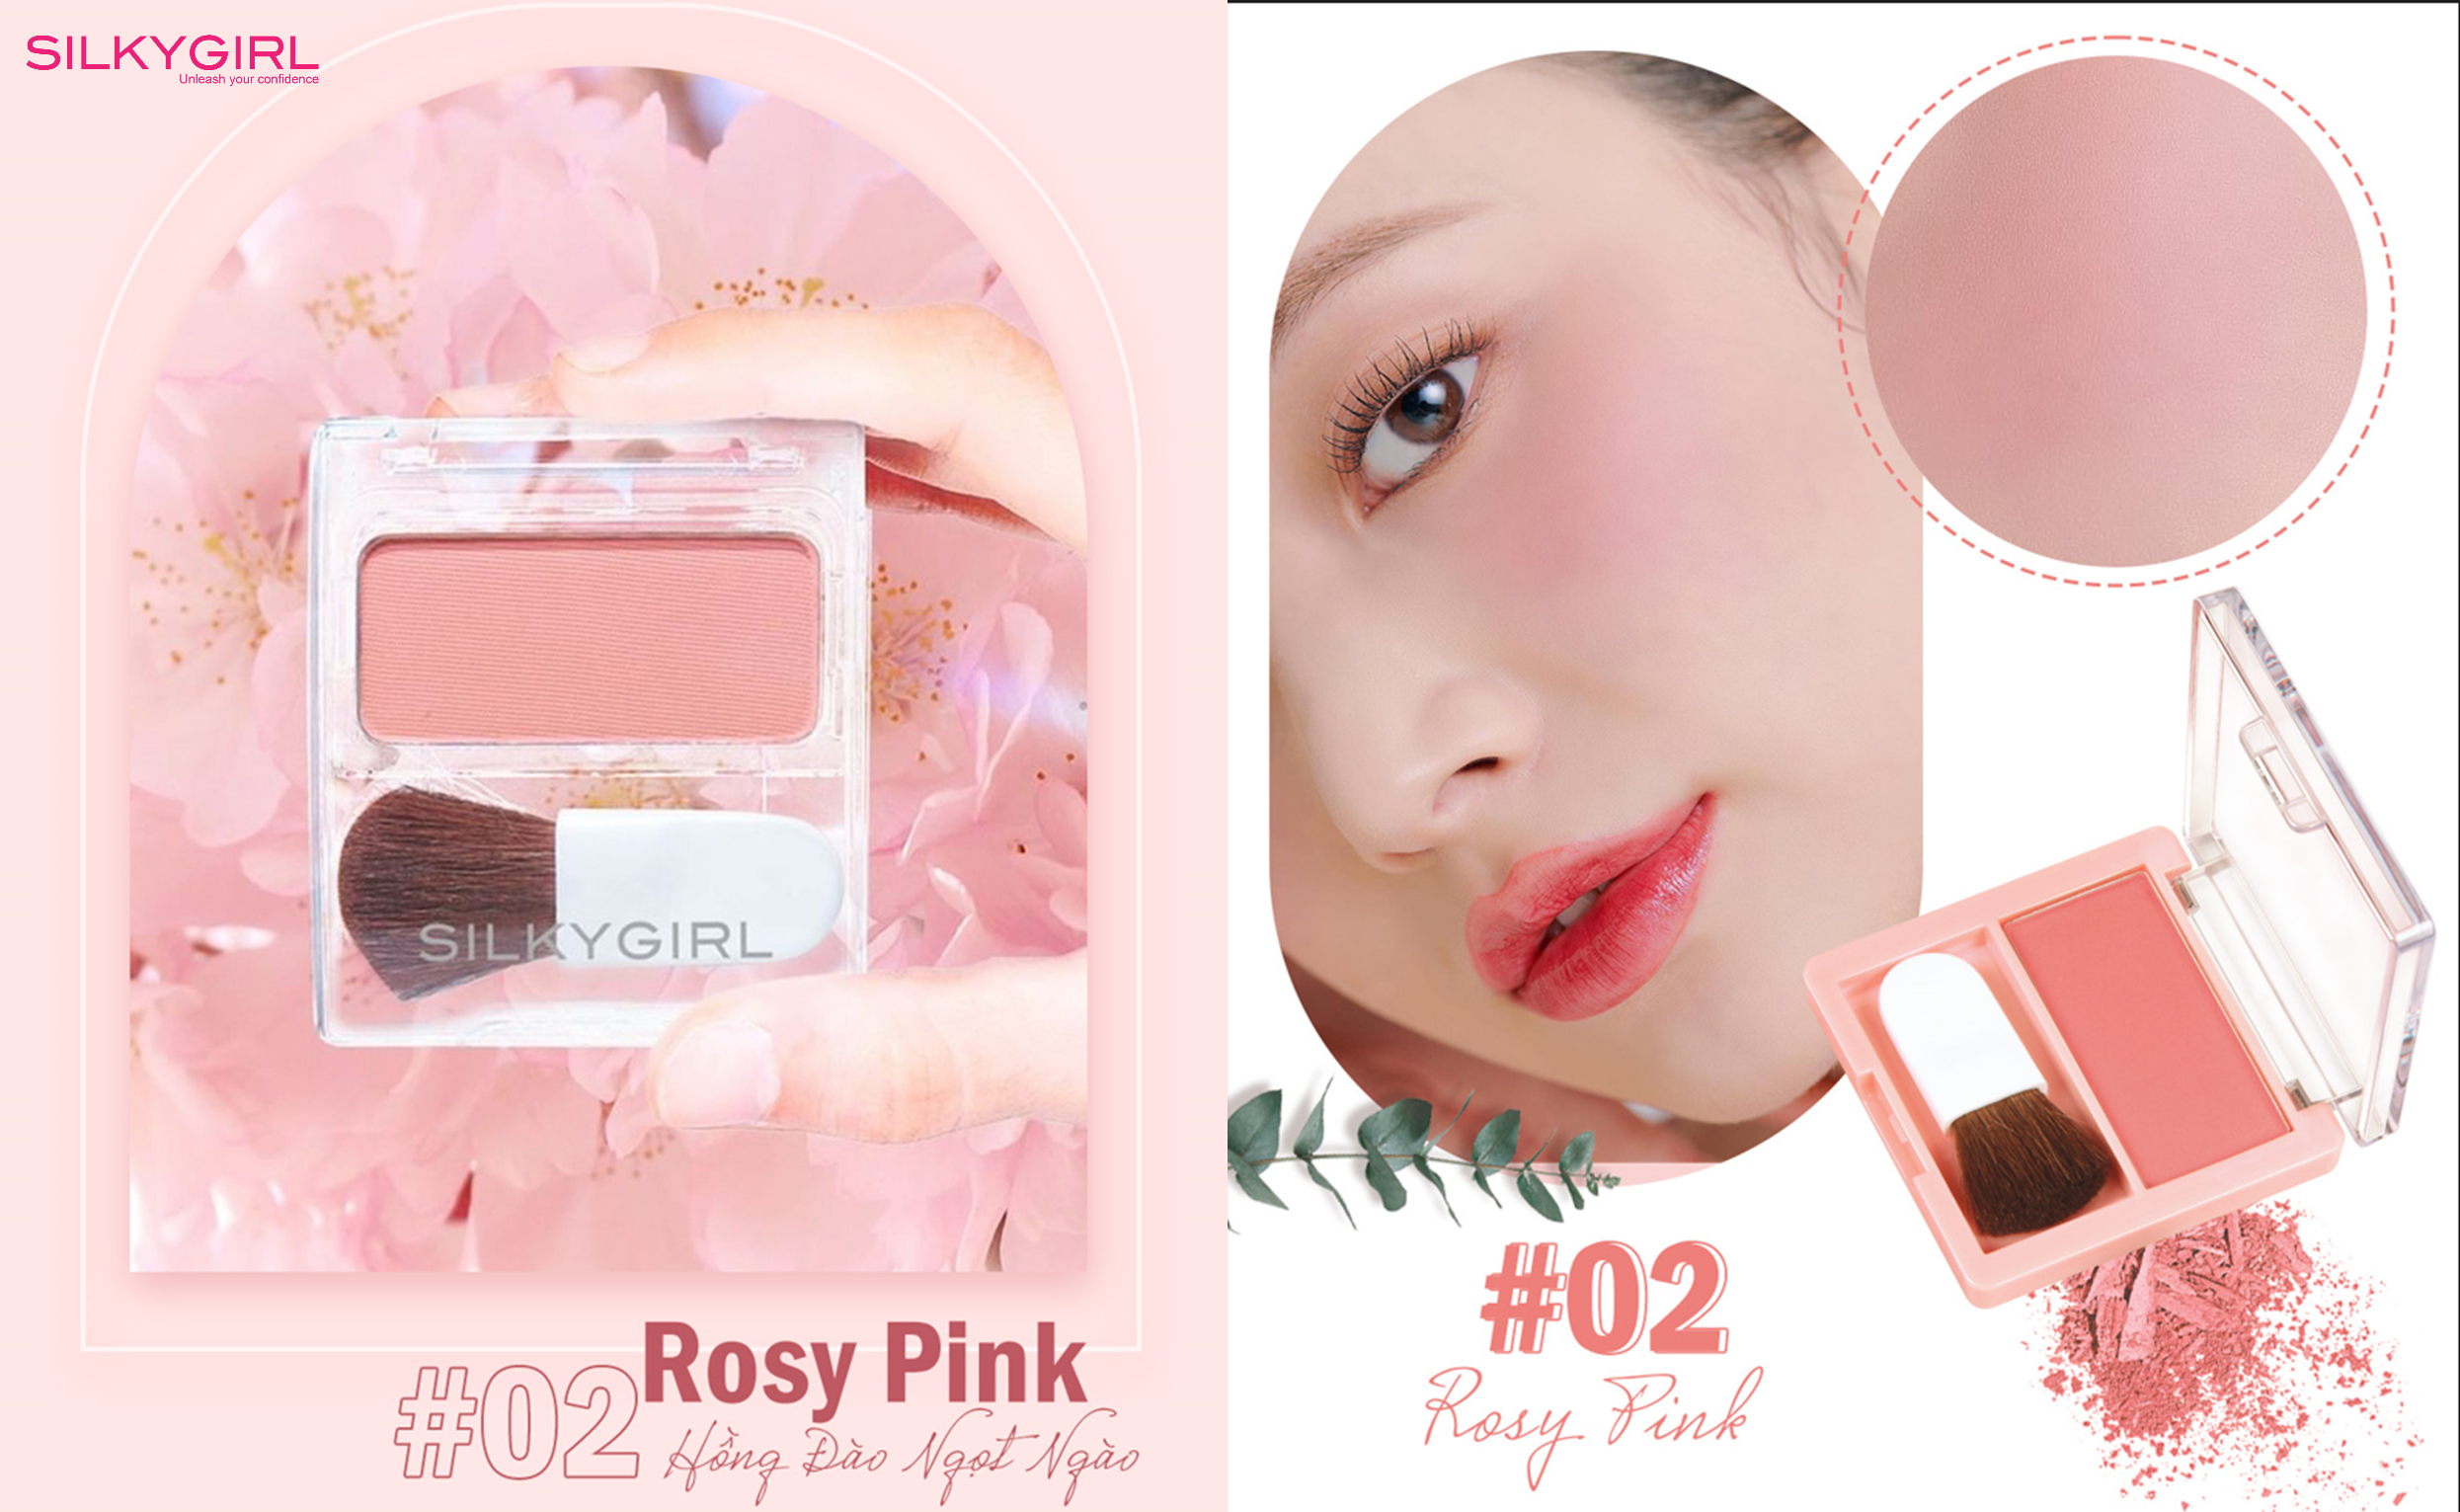 02 Rosy Pink Peach: Màu hồng này pha chút cam nổi bật